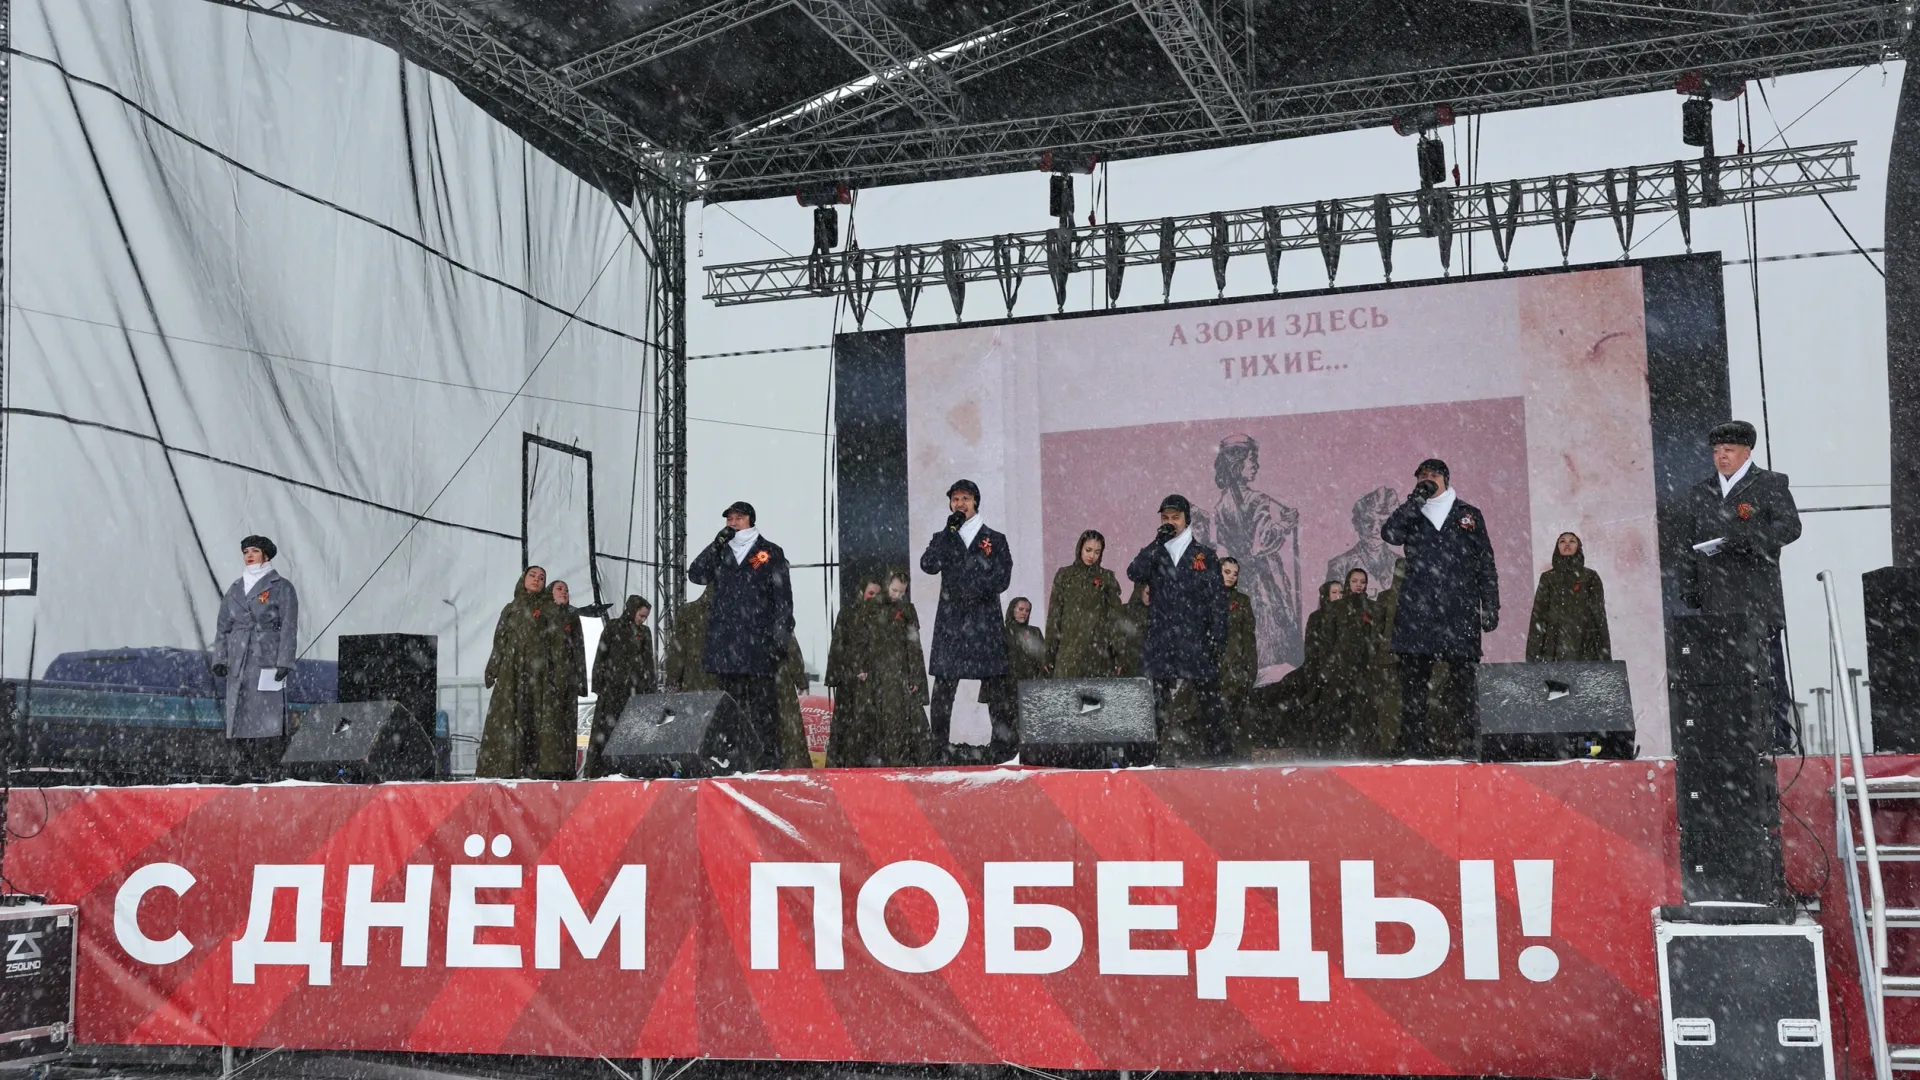 Артисты выступили перед зрителями несмотря на непогоду. Фото: Андрей Ткачев / «Ямал-Медиа»